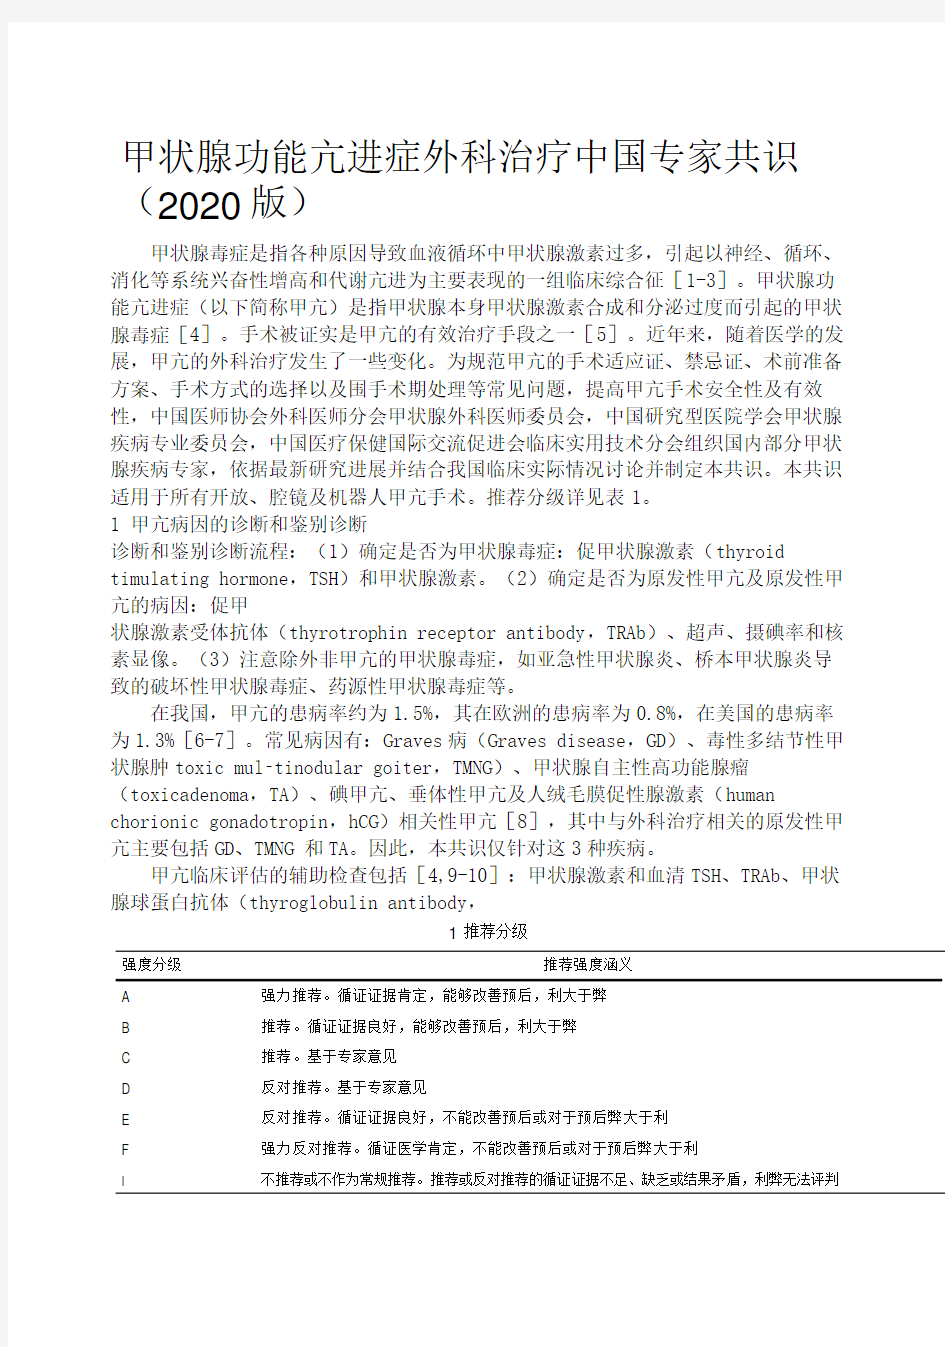 2020年版甲状腺功能亢进症外科治疗中国专家共识